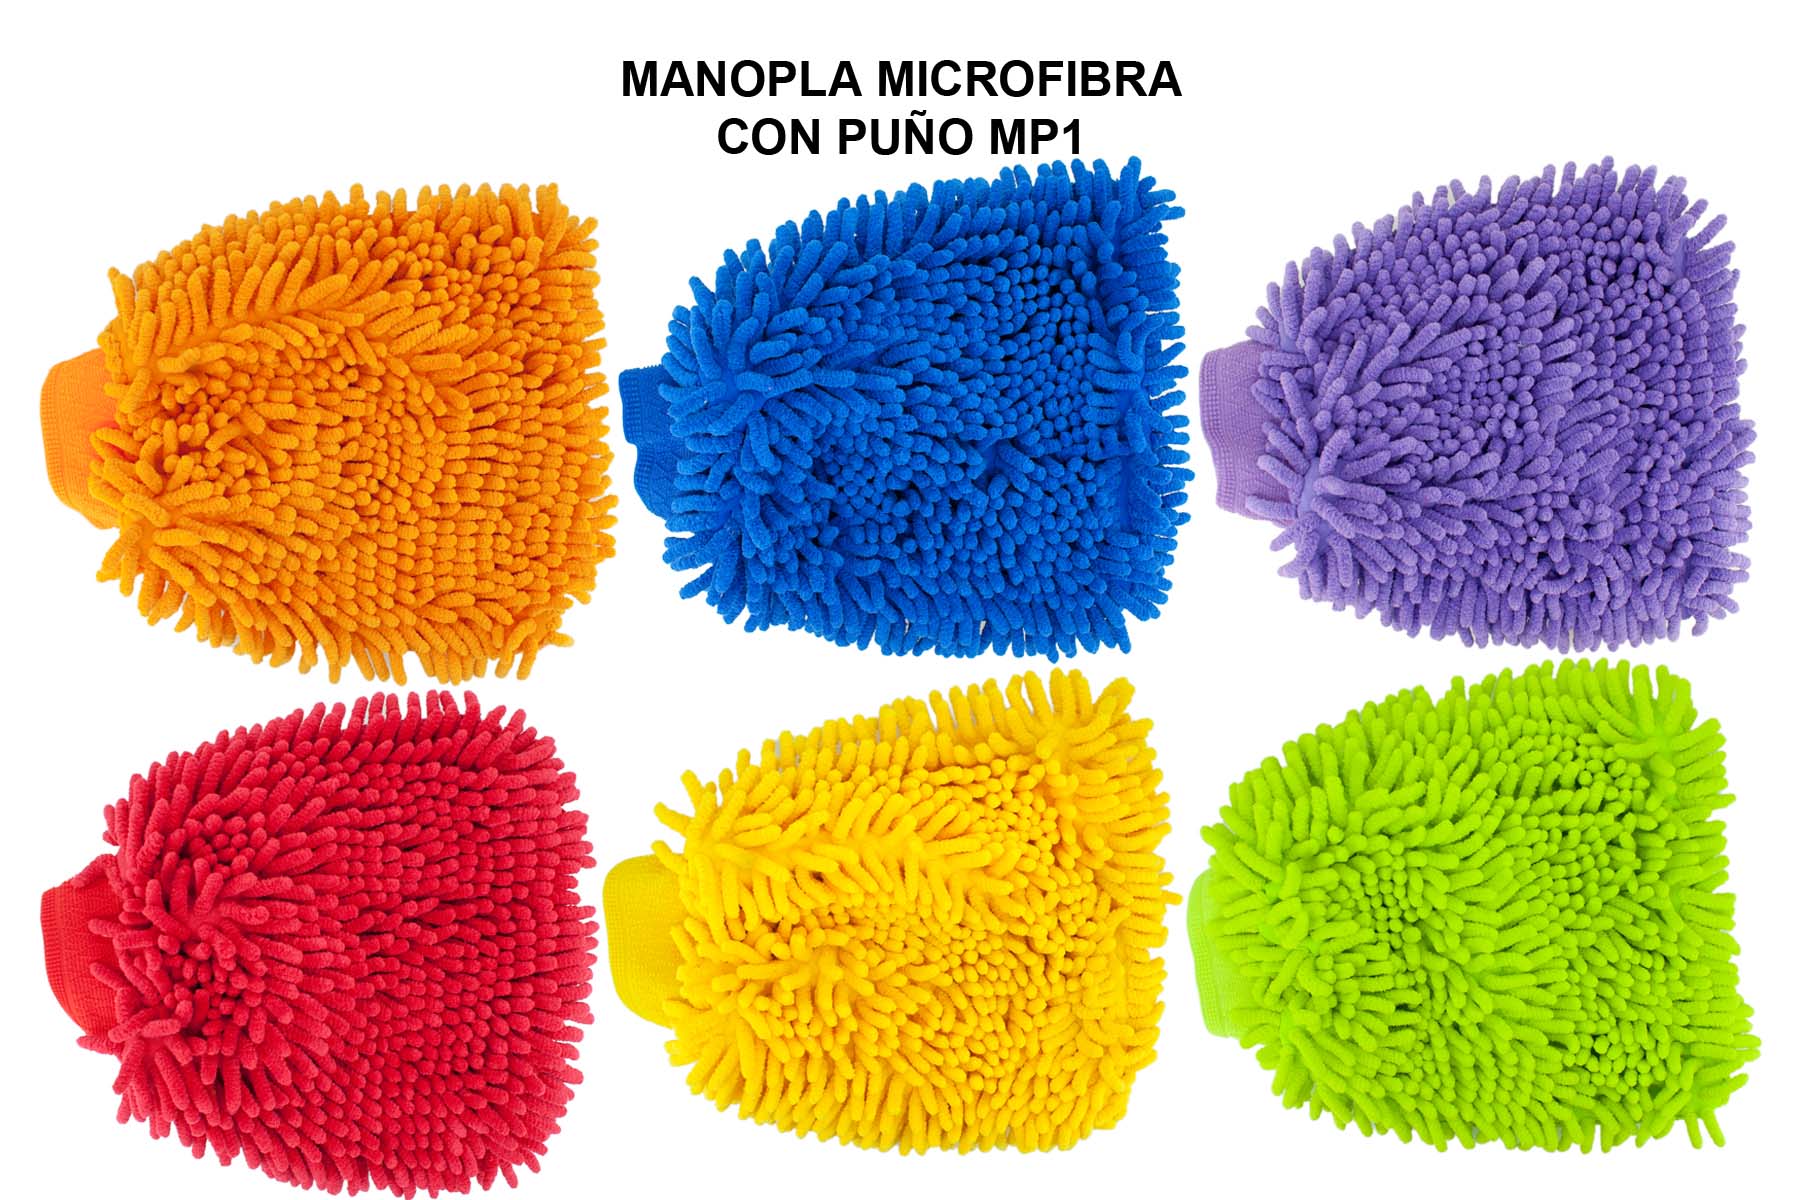 MANOPLA MICROFIBRA CON PUÑO MP1